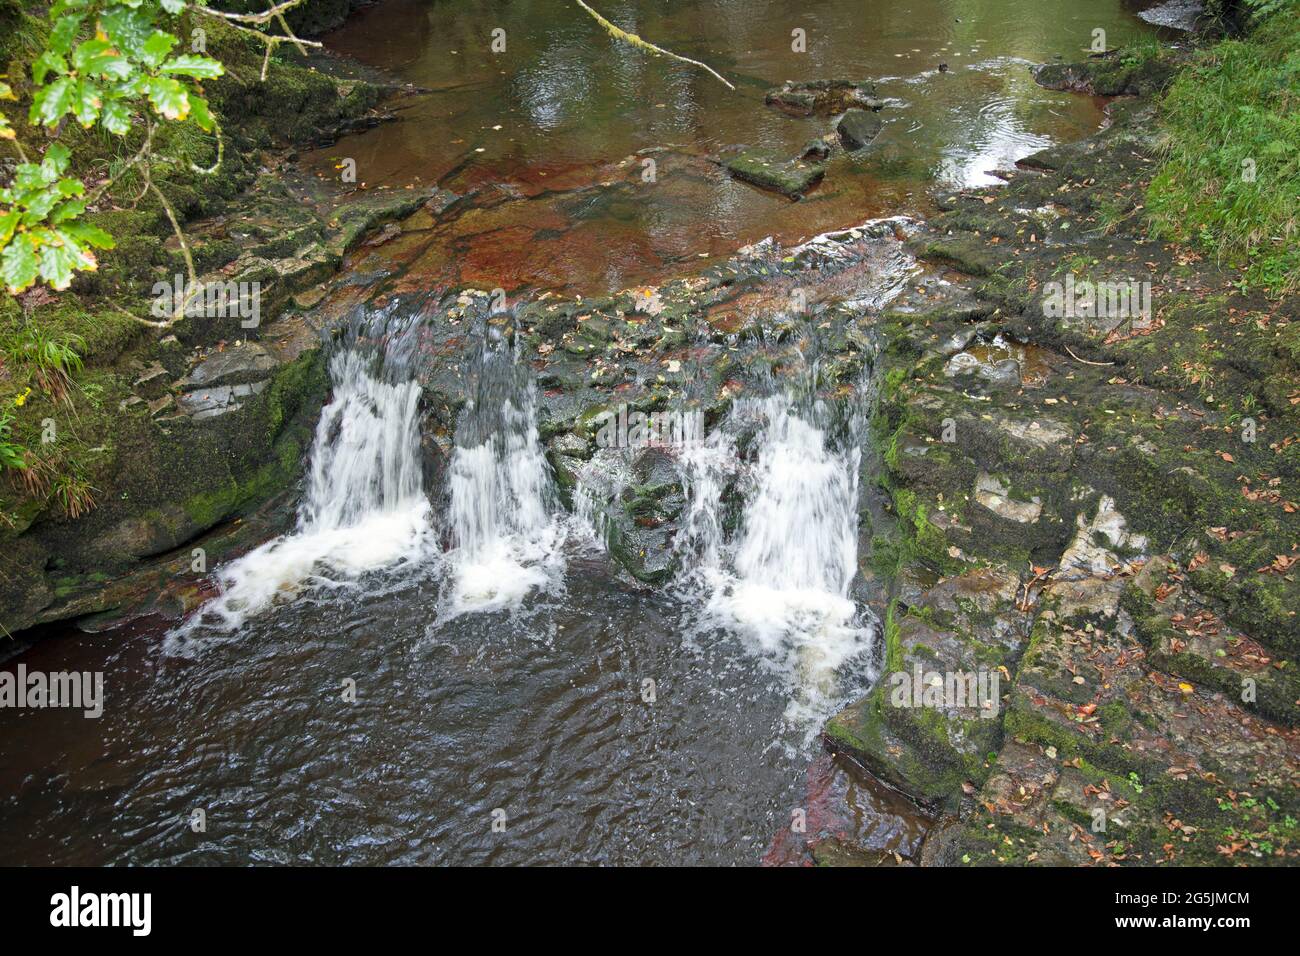 Acqua che scorre su una piccola cascata, a Neath, Galles. Presa con un'esposizione più lenta per catturare il movimento dell'acqua. Foto Stock